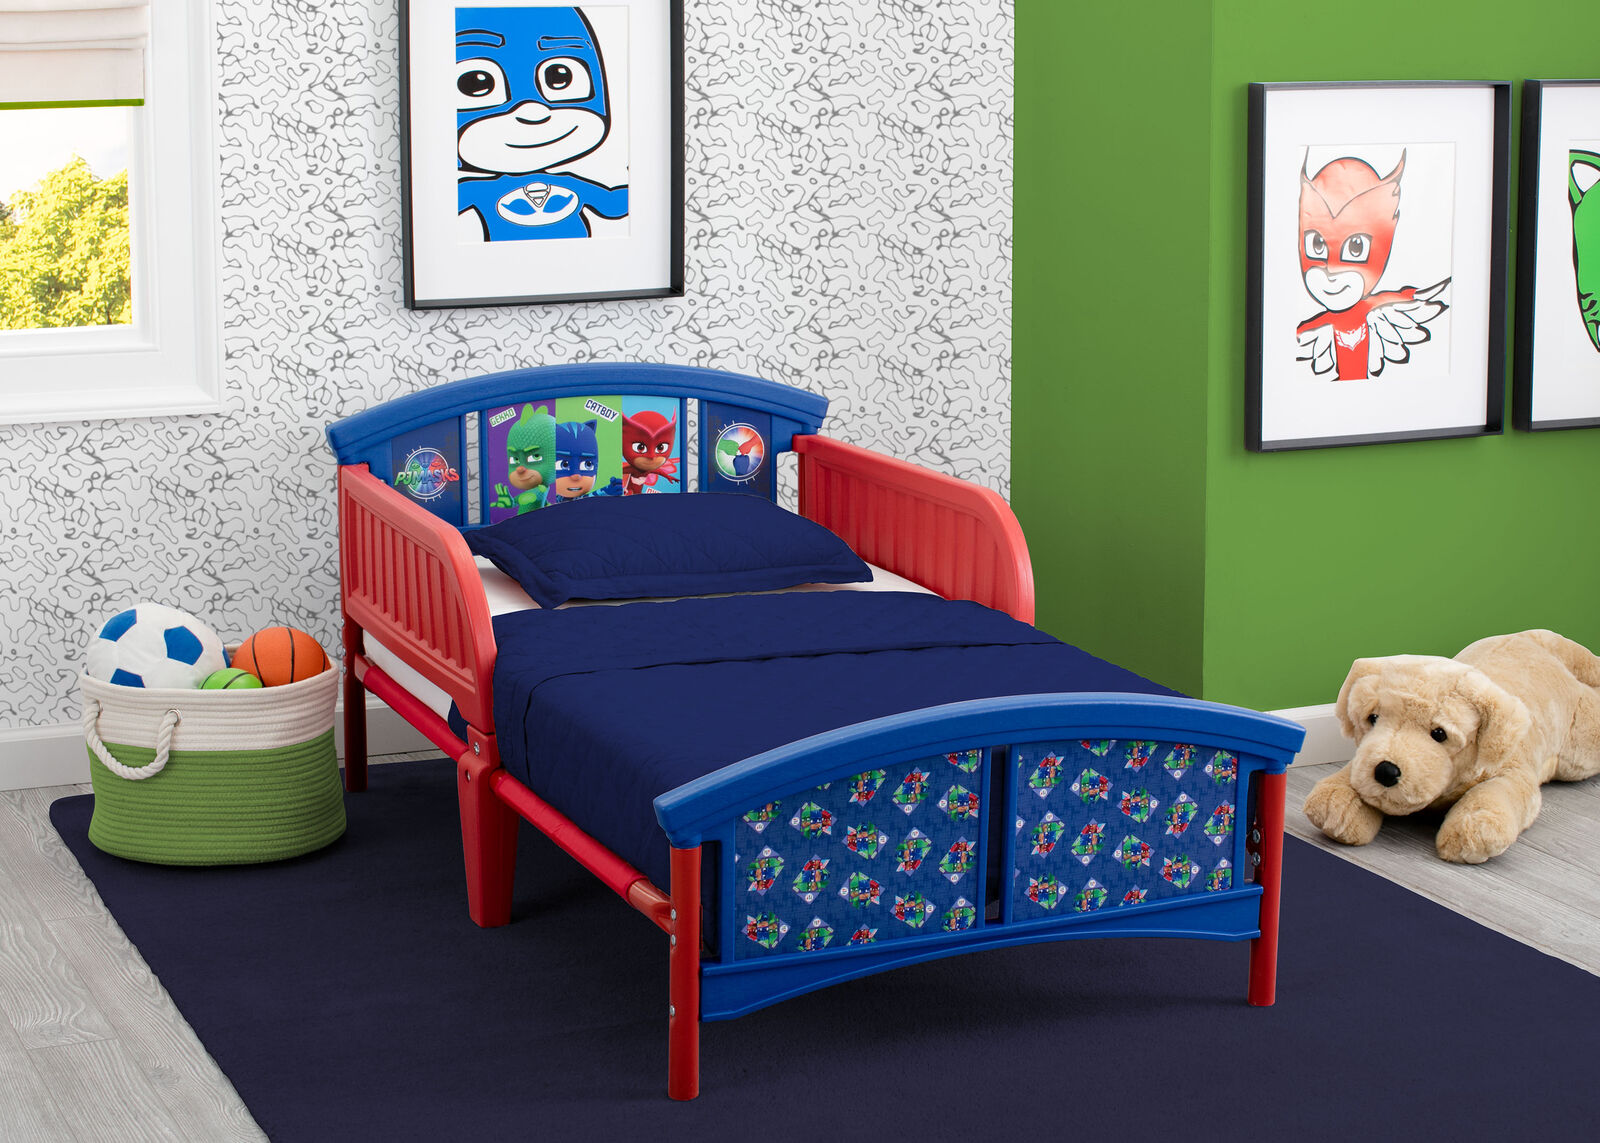 Pj Masks Toddler Bed Guard Rails Steel Frame Kids Bedroom Child Furniture Blue